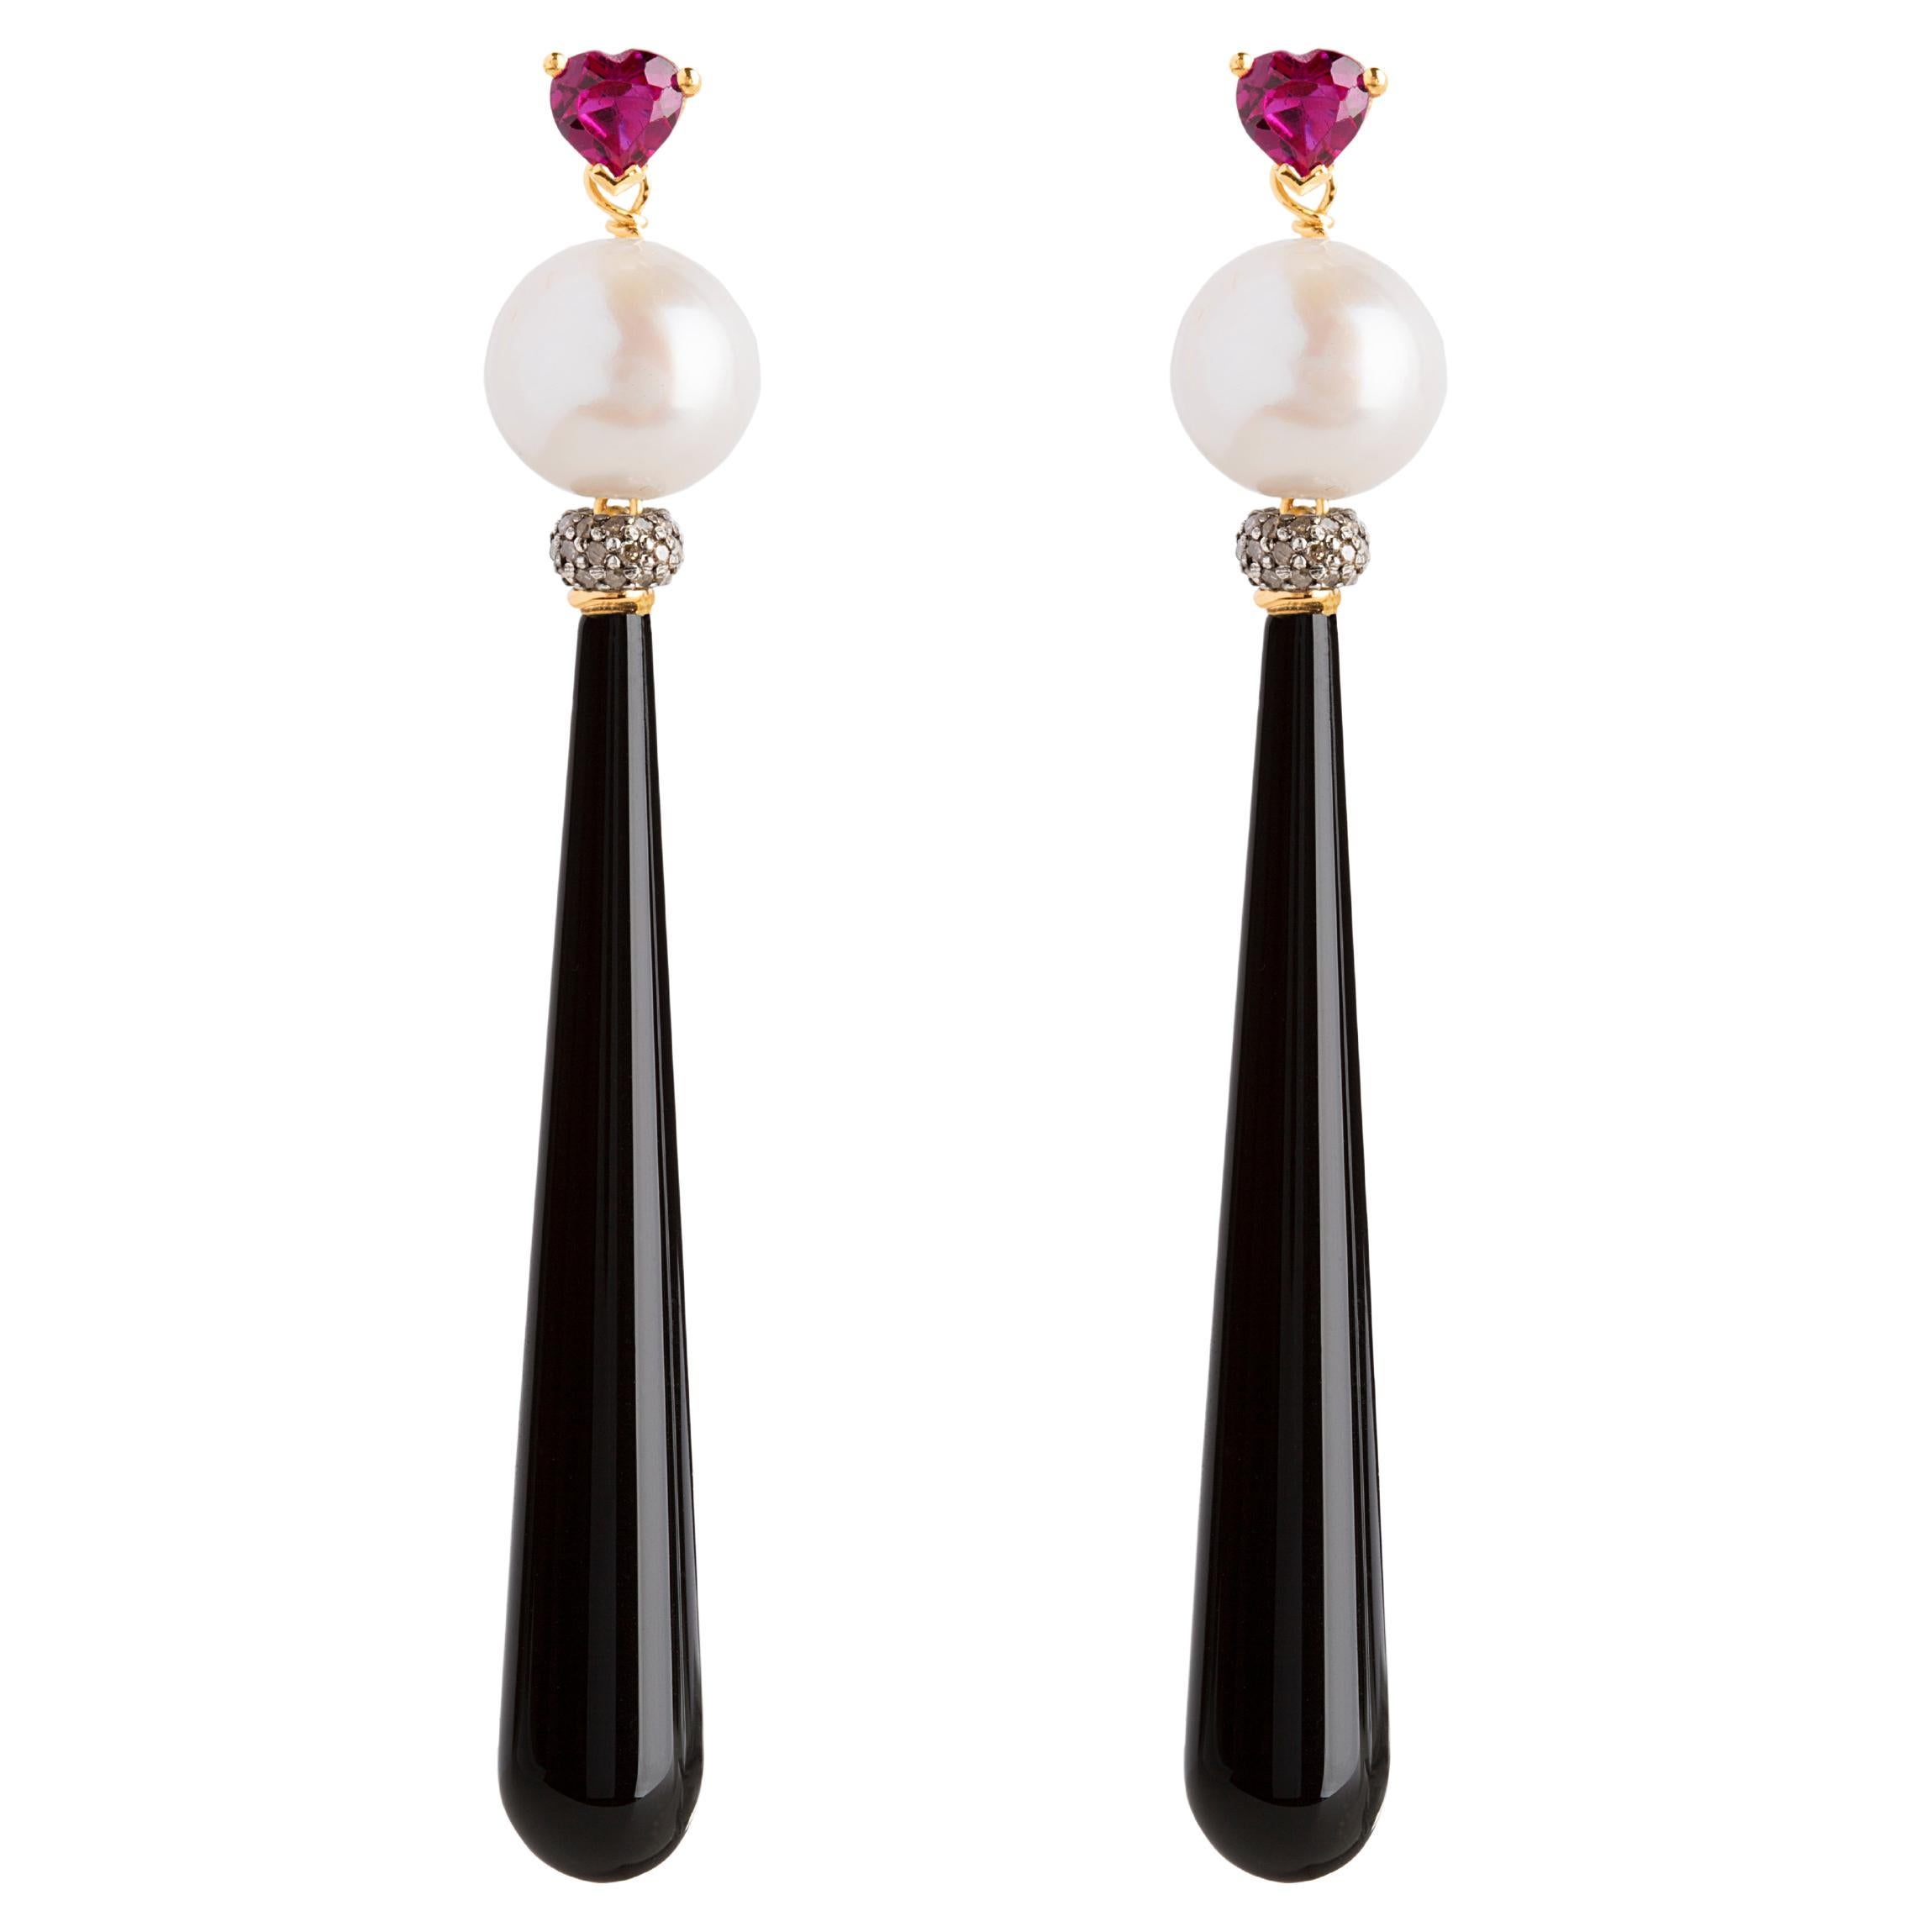 Rossella Ugolini 18K Gold Deco Style Earrings Heart-Shaped Ruby Diamonds Onyx  For Sale